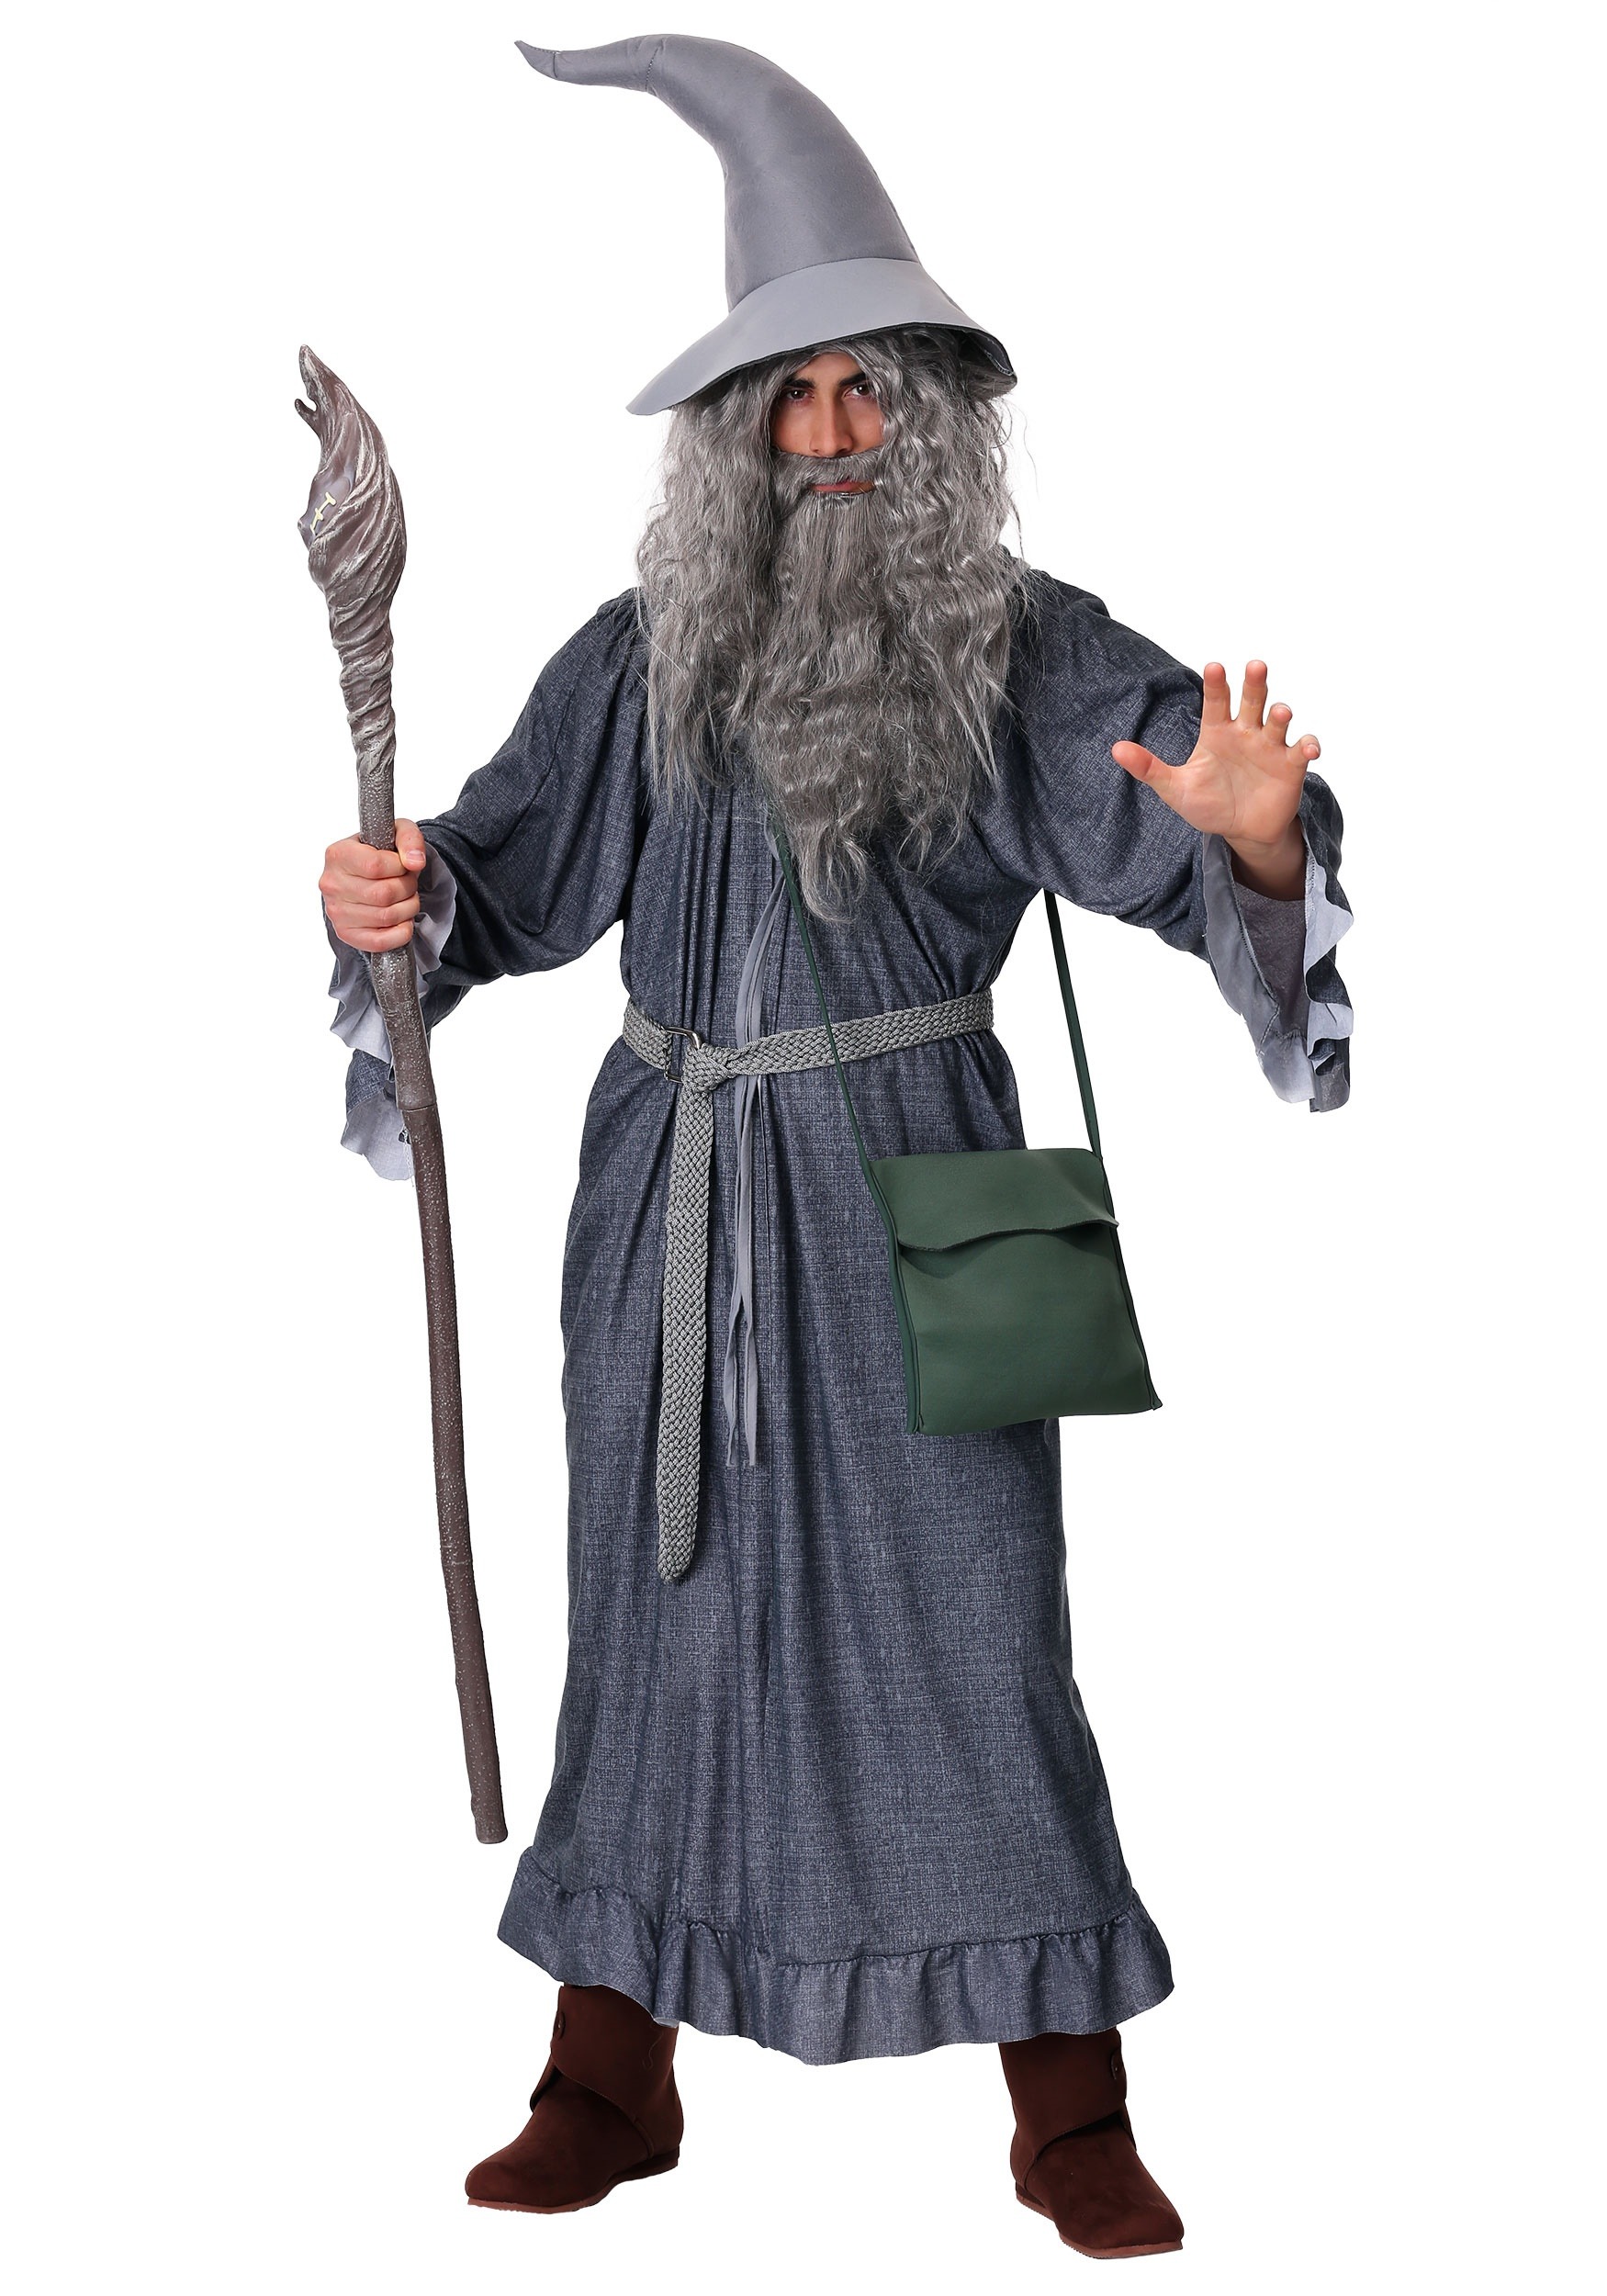 gandalf and frodo costume